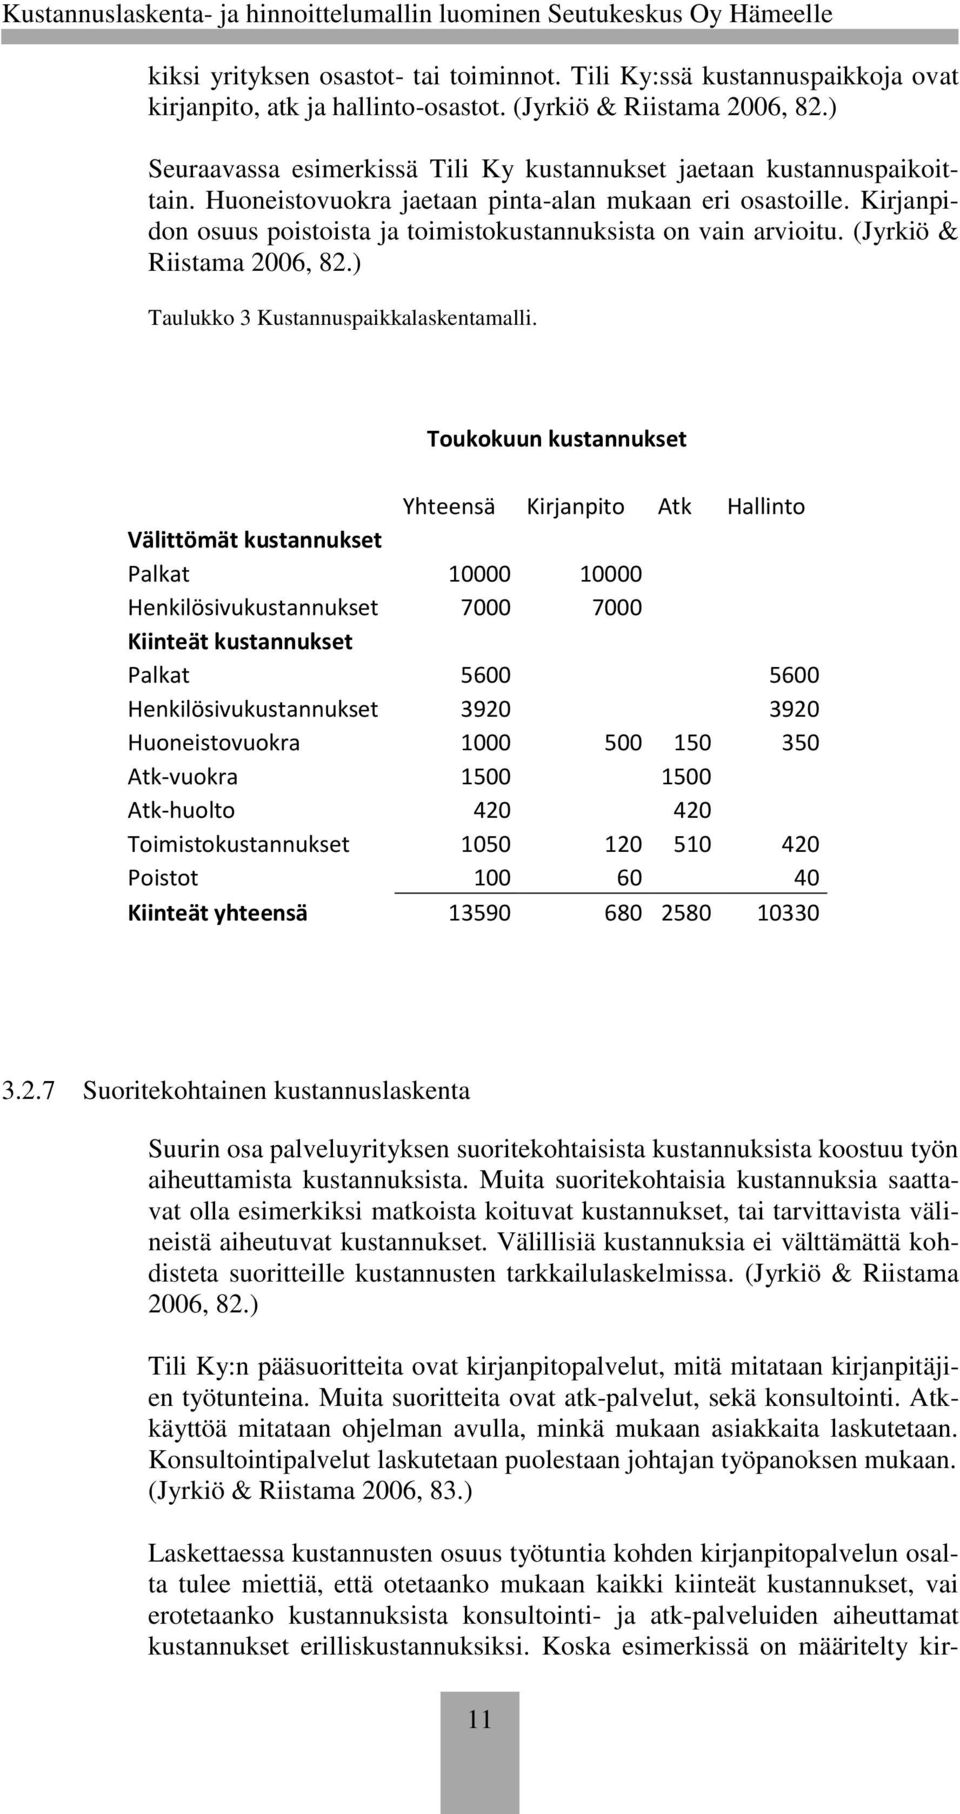 Kirjanpidon osuus poistoista ja toimistokustannuksista on vain arvioitu. (Jyrkiö & Riistama 2006, 82.) Taulukko 3 Kustannuspaikkalaskentamalli.